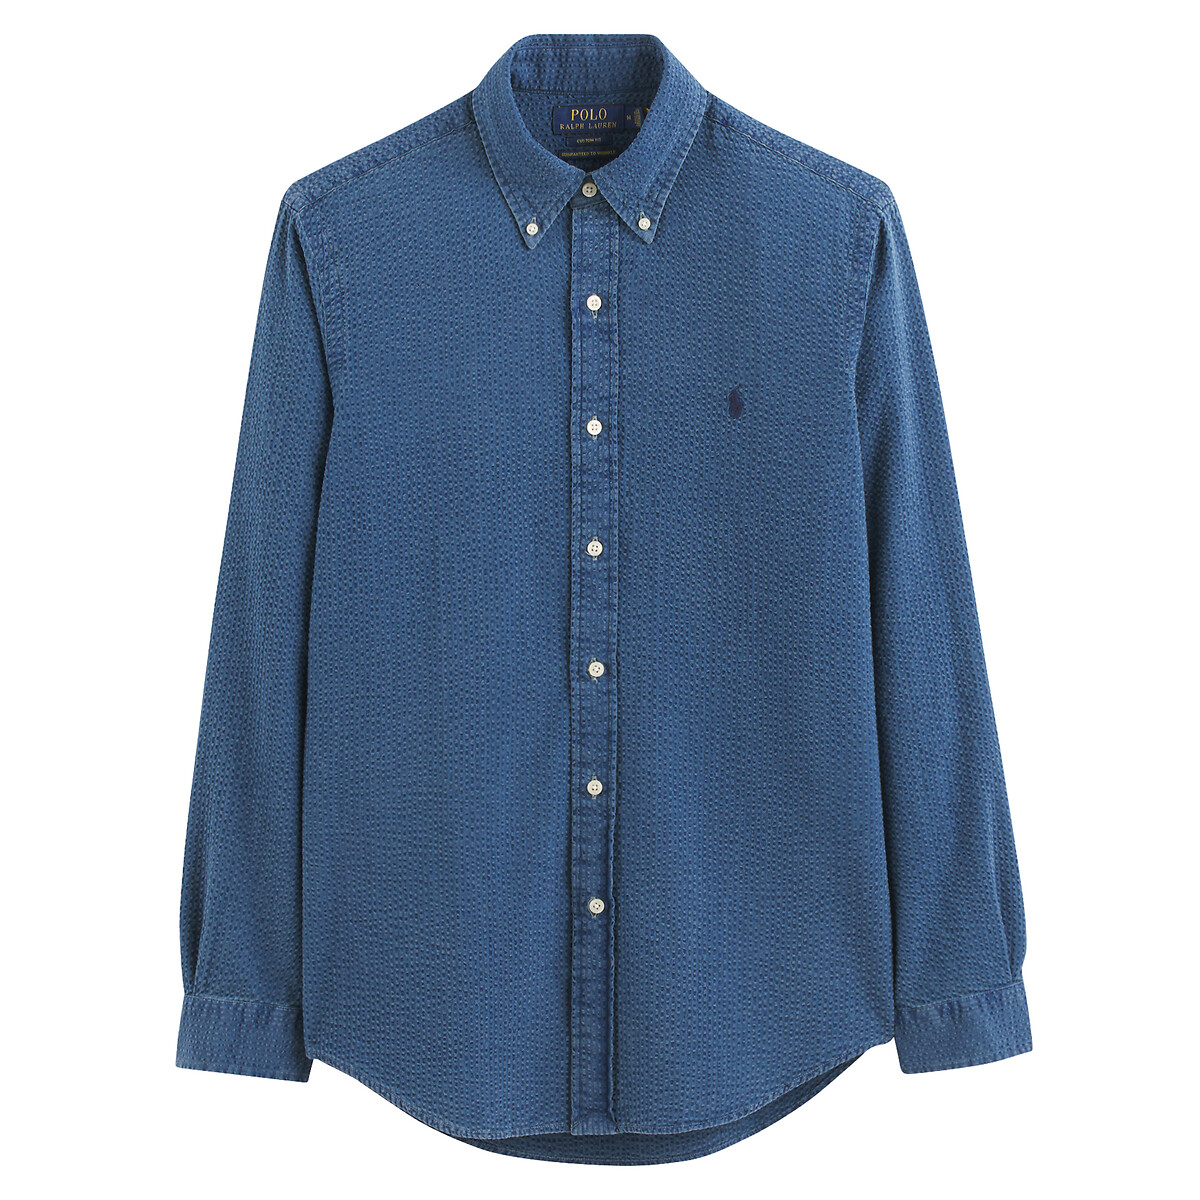 Рубашка узкая из легкой полосатой ткани XL синий рубашка из легкой полосатой ткани с вышитым логотипом s синий